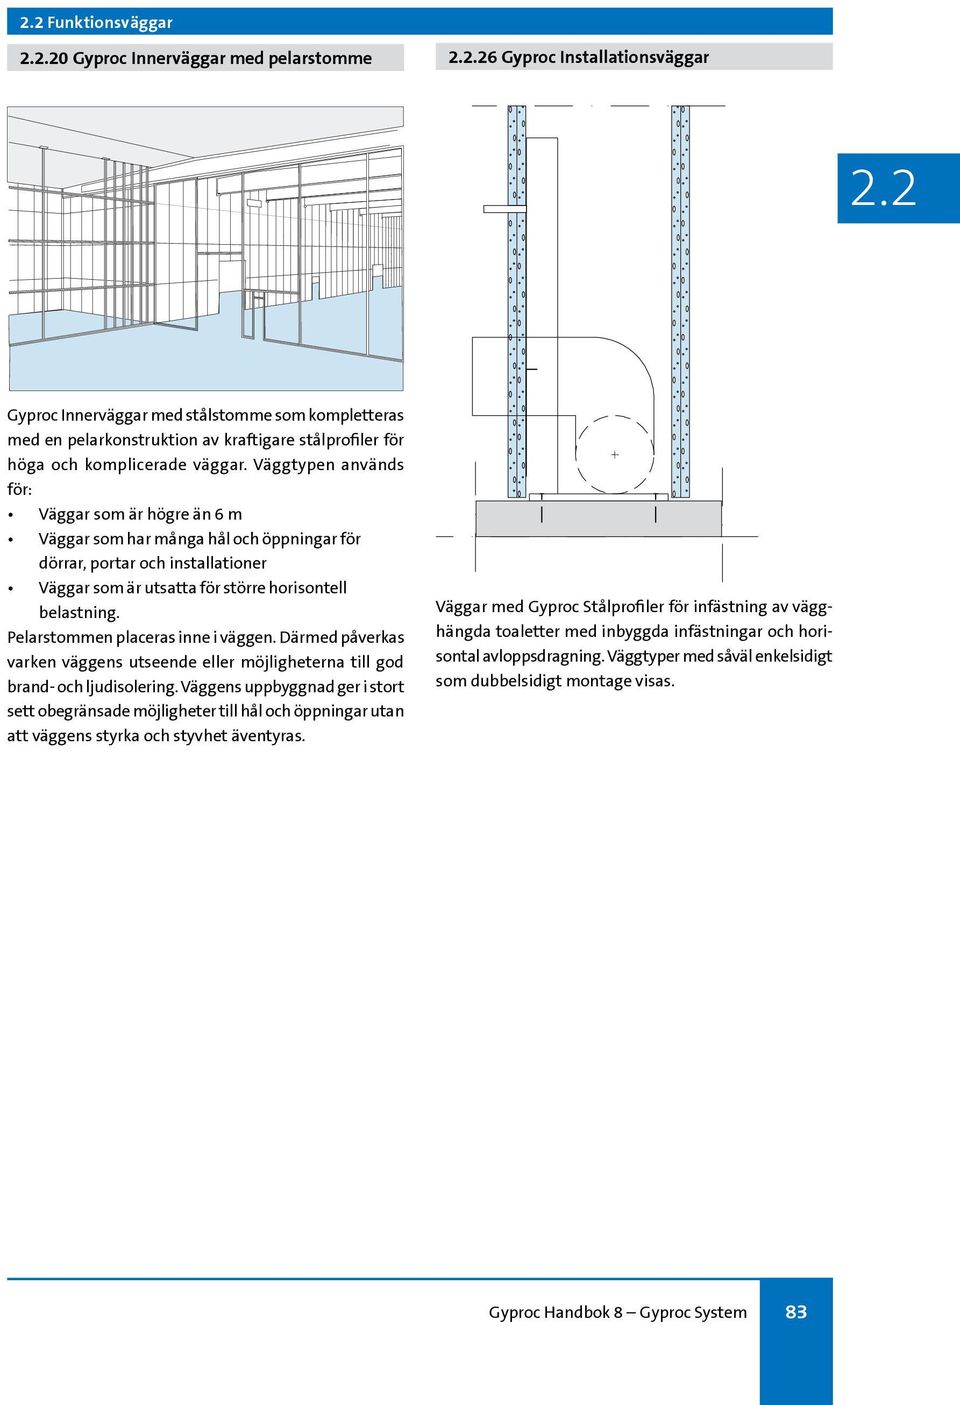 Väggtypen används för: Väggar som är högre än 6 m Väggar som har många hål och öppningar för dörrar, portar och installationer Väggar som är utsatta för större horisontell belastning.